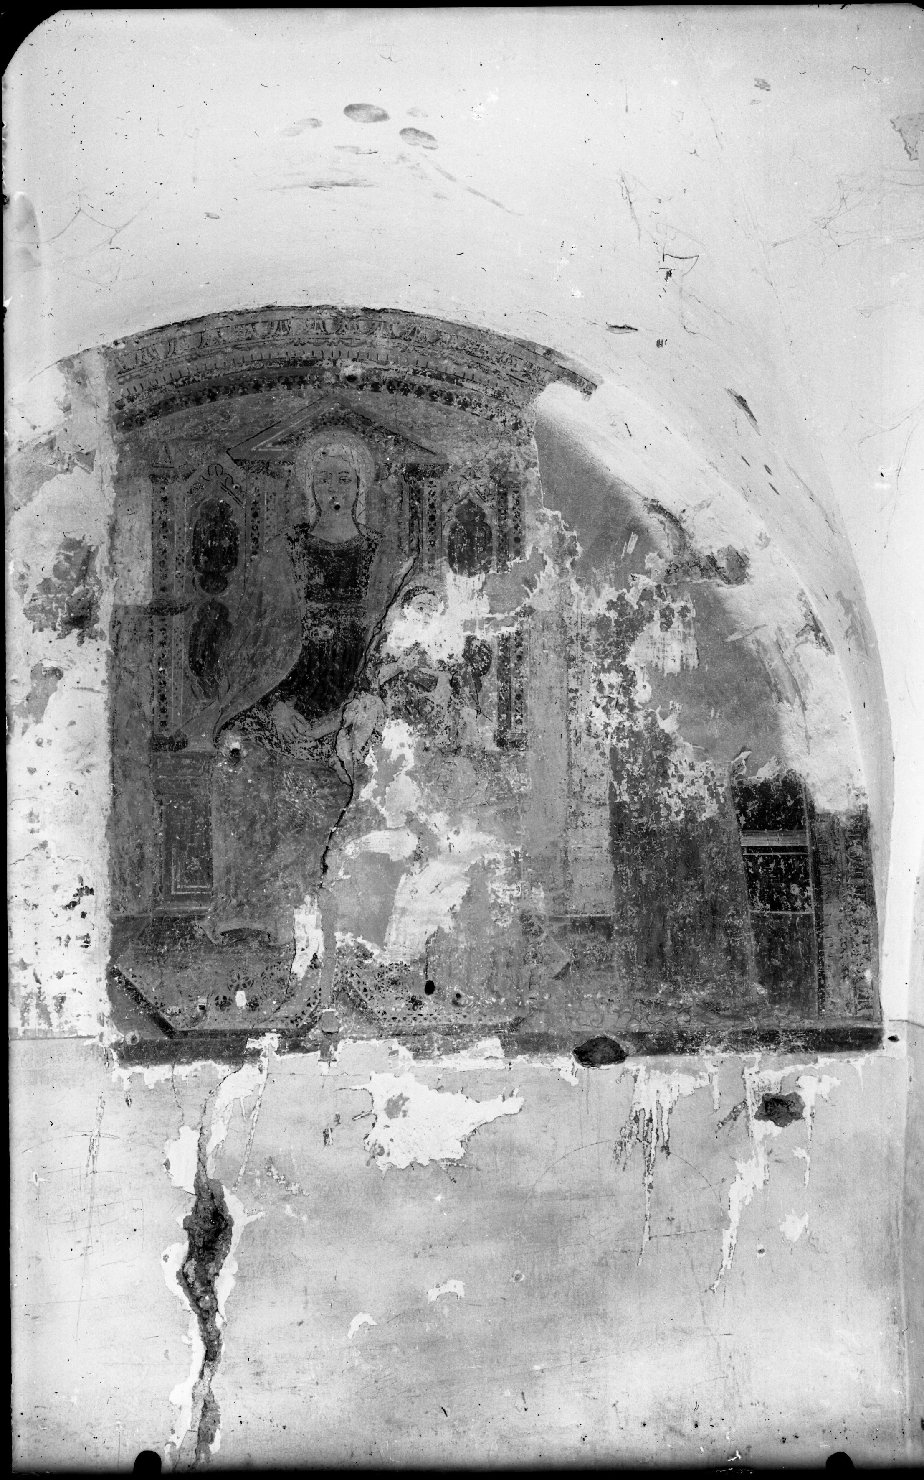 Architettura religiosa - Chiese - Interni - Pittura - Affreschi - Iconografia cristiana (negativo) di Meisso, Silvio (XX)